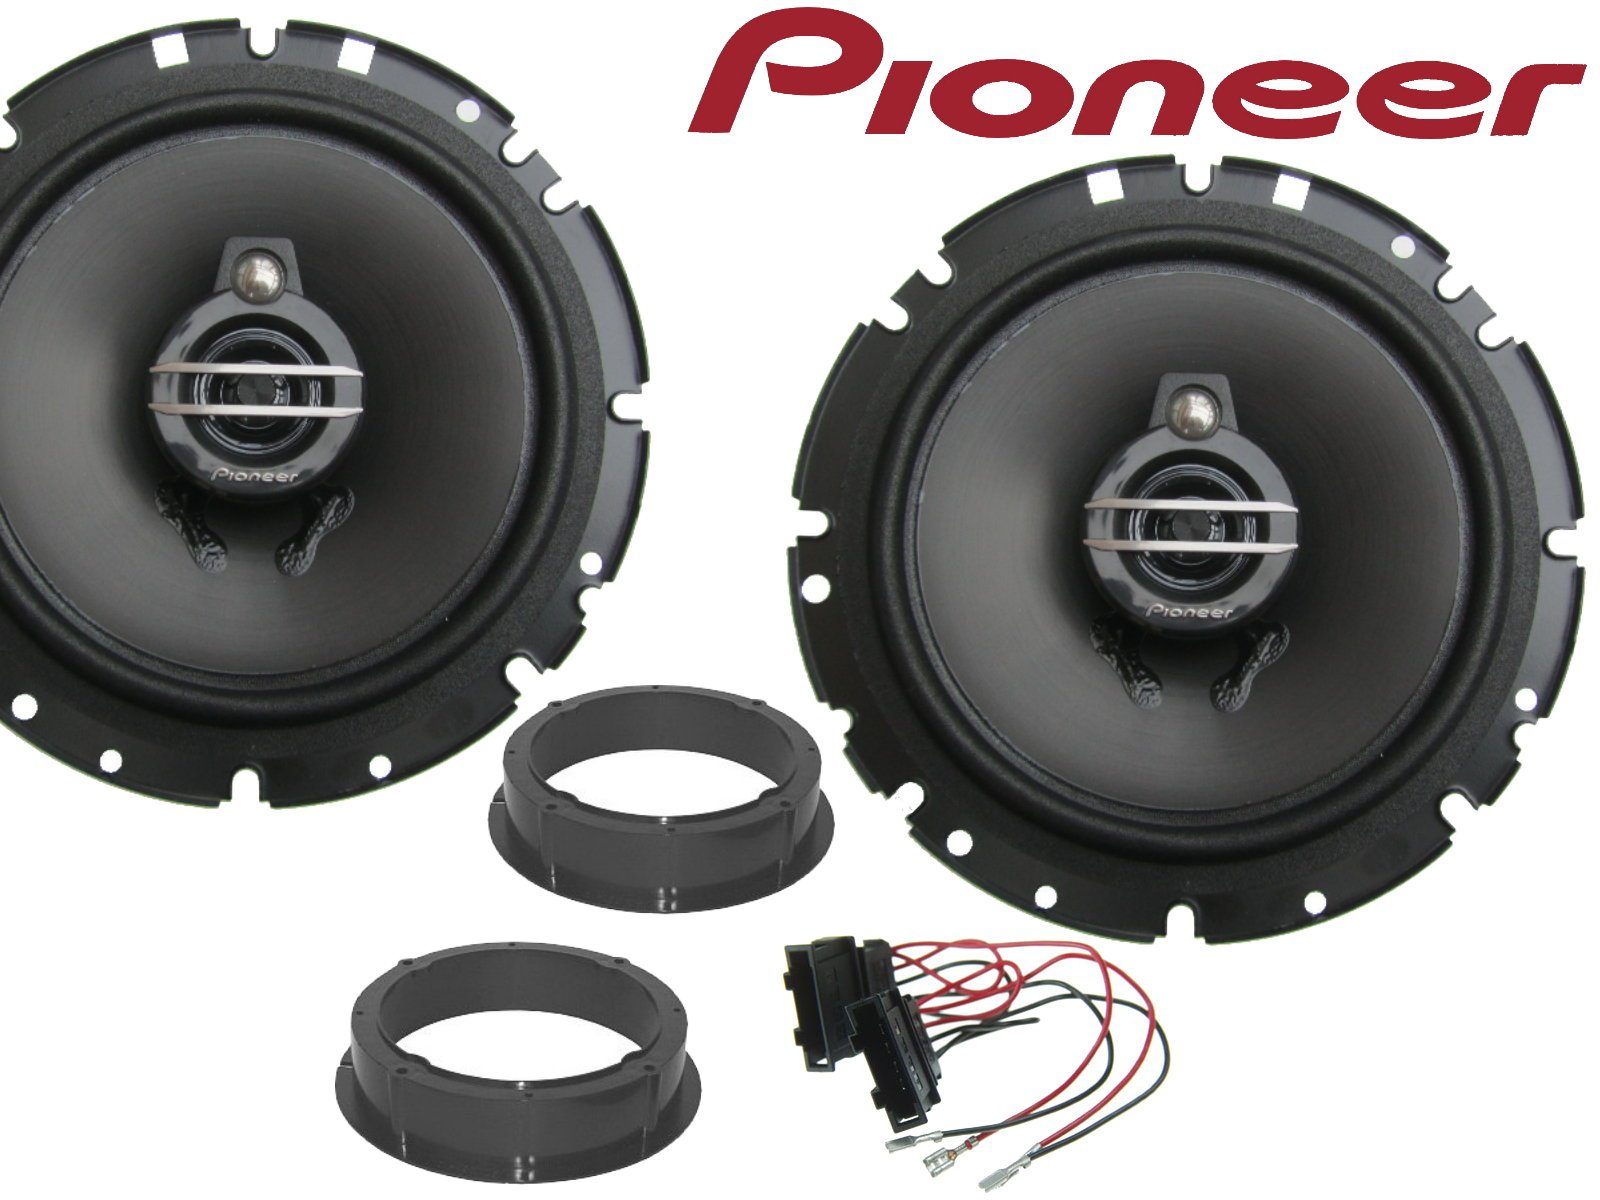 DSX Pioneer 3Wege passend für VW Tiguan Bj 07-16 Lauts Auto-Lautsprecher (40 W)